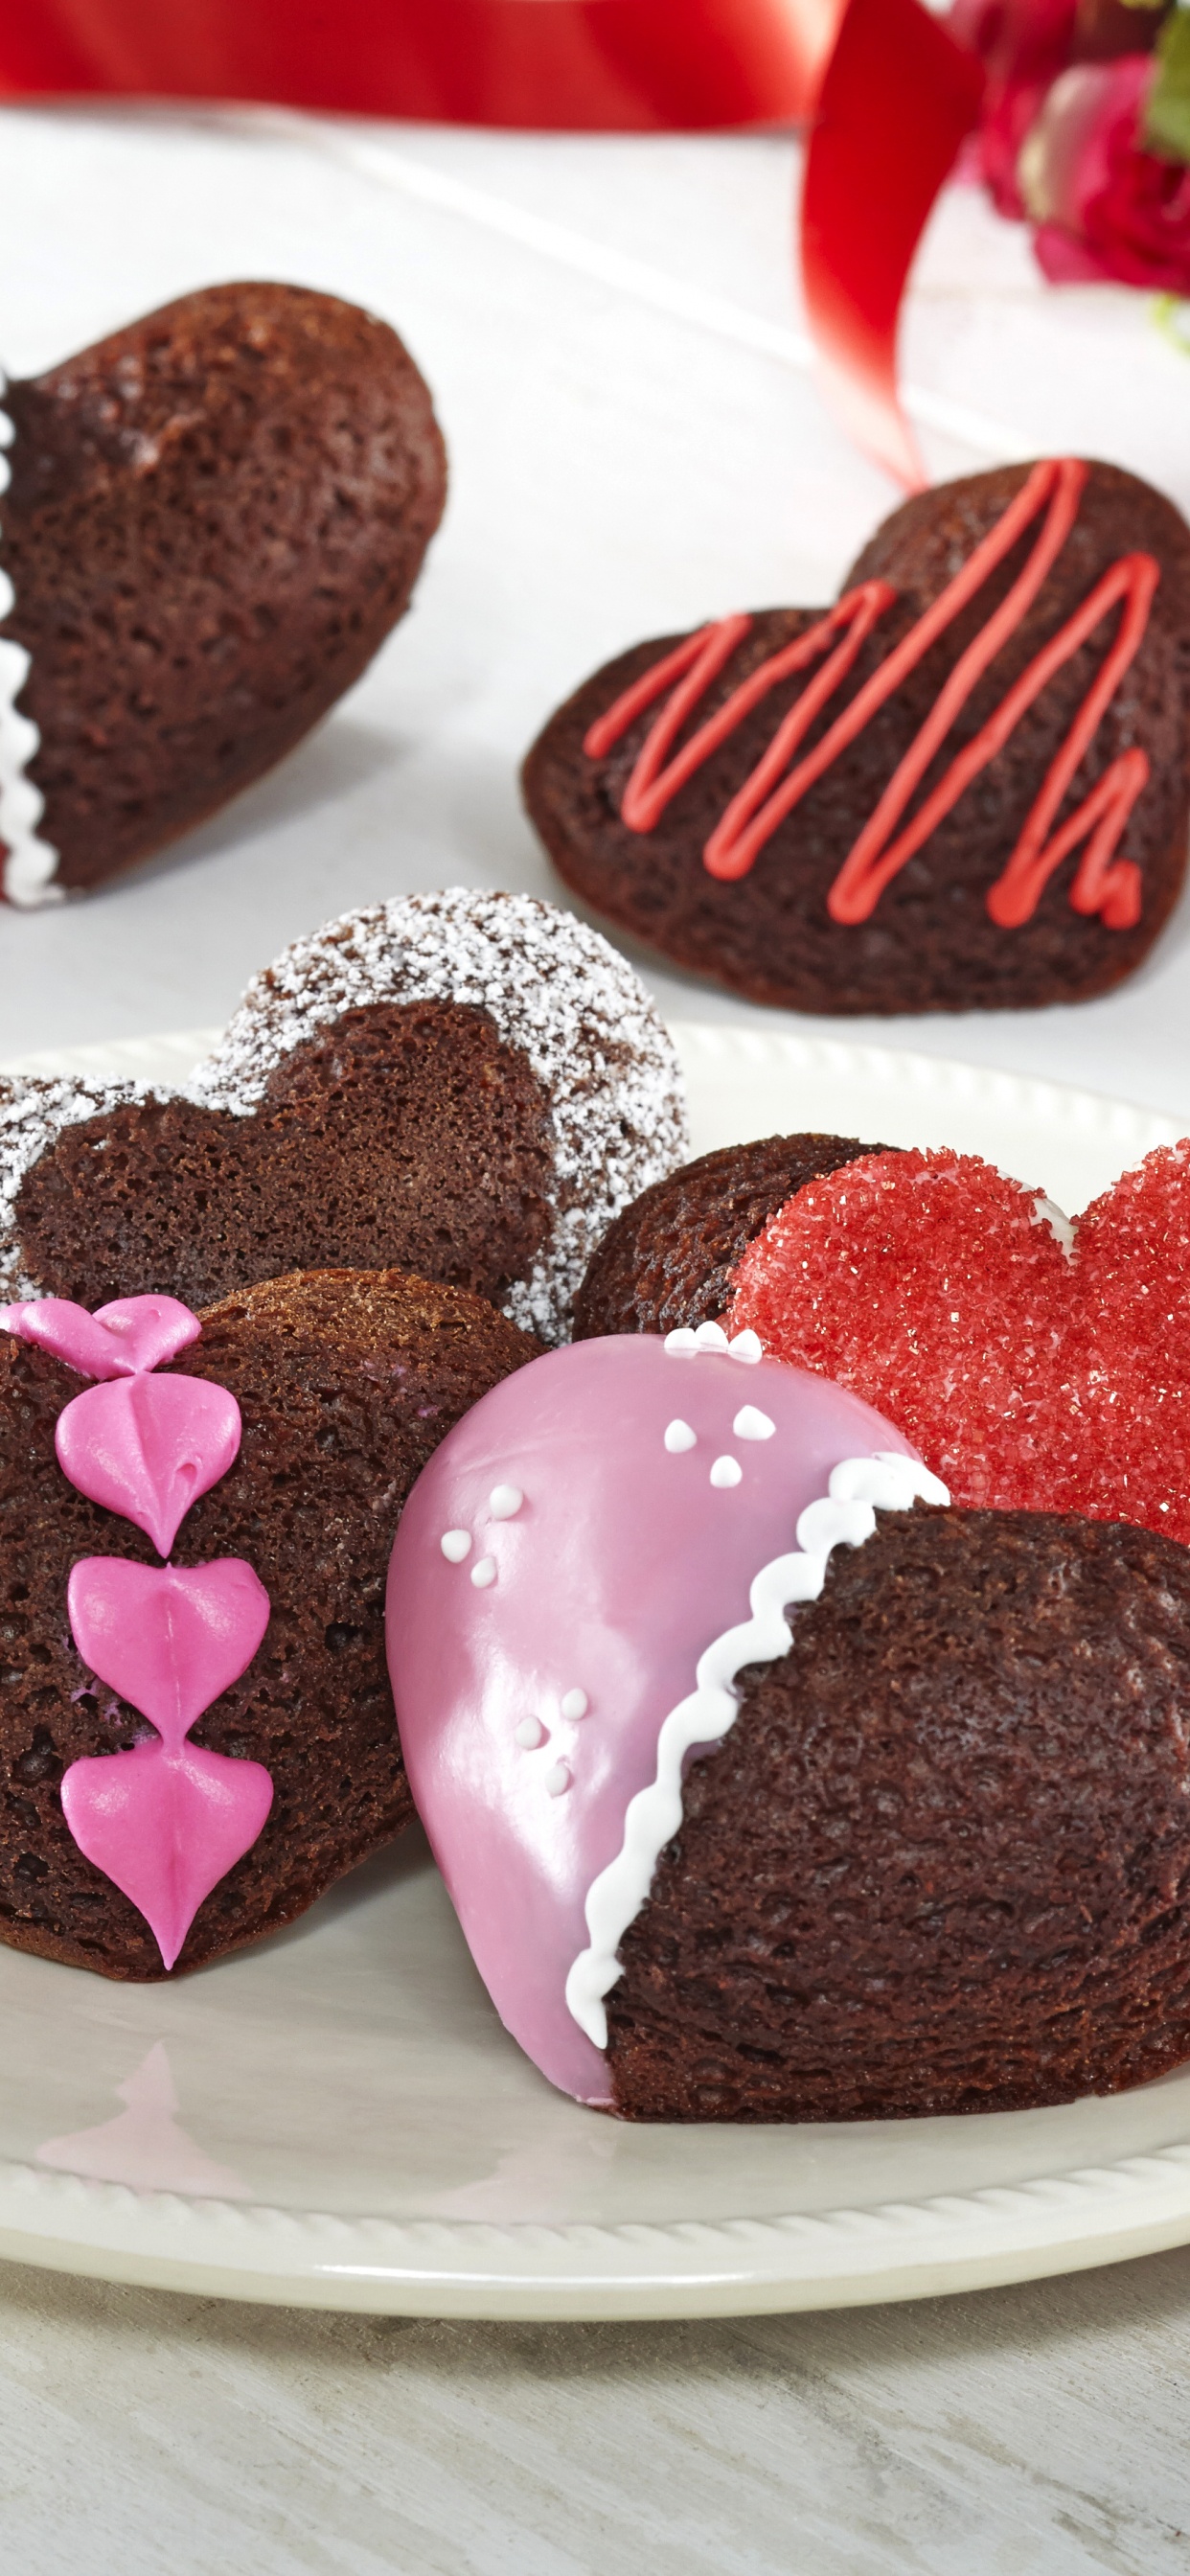 Schokoladenkuchen, Dessert, Valentines Tag, Schokolade, Lebensmittel. Wallpaper in 1242x2688 Resolution